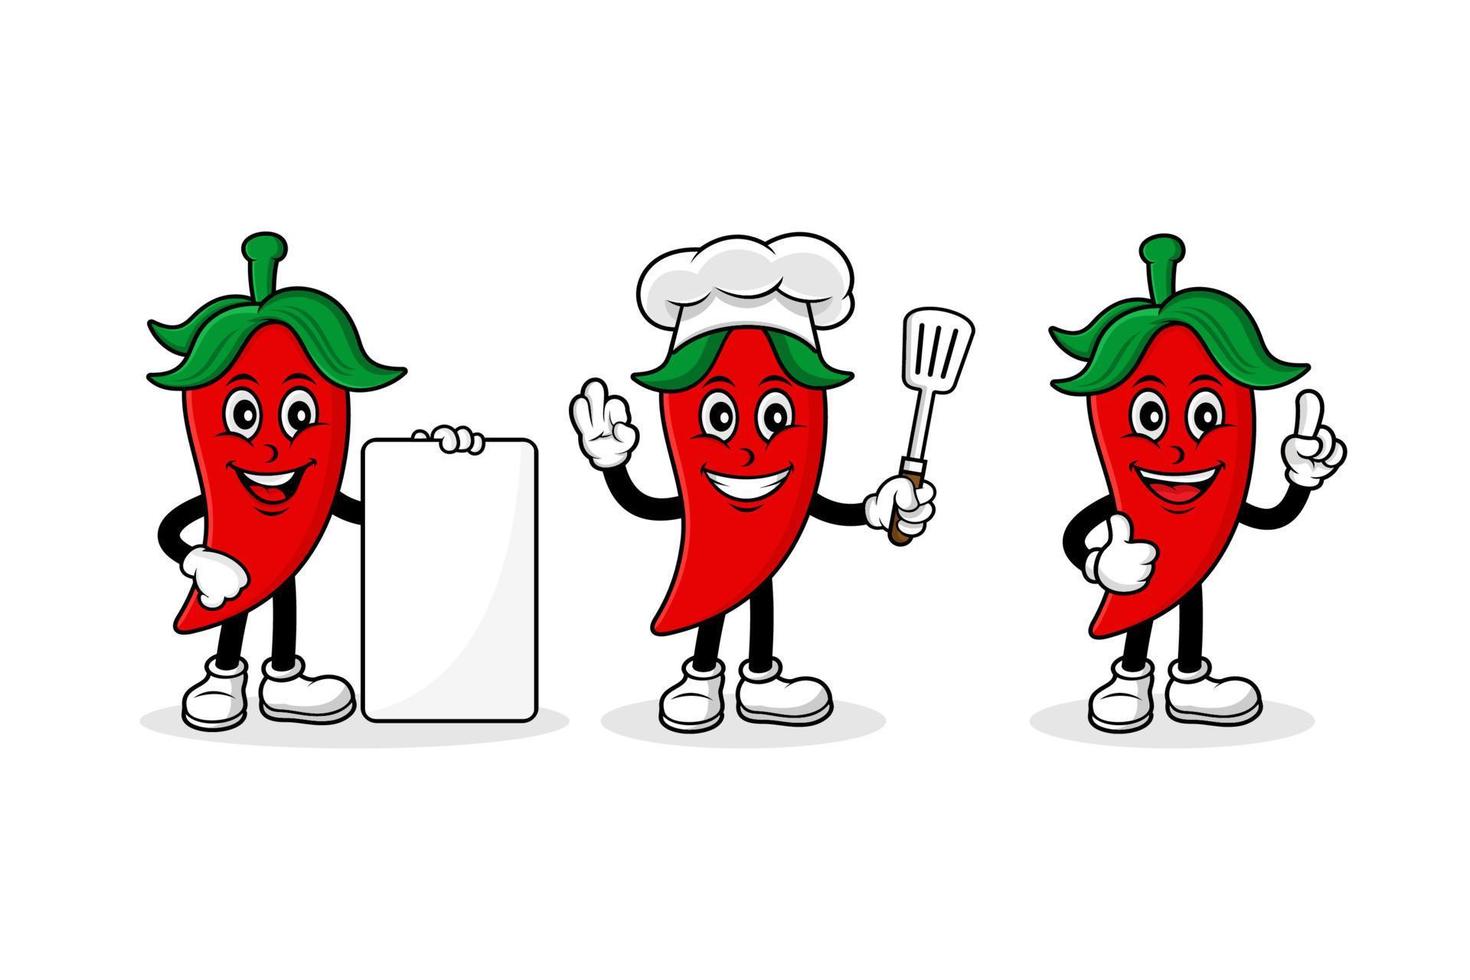 raccolta di illustrazioni di disegno vettoriale di personaggio dei cartoni animati della mascotte del peperoncino rosso